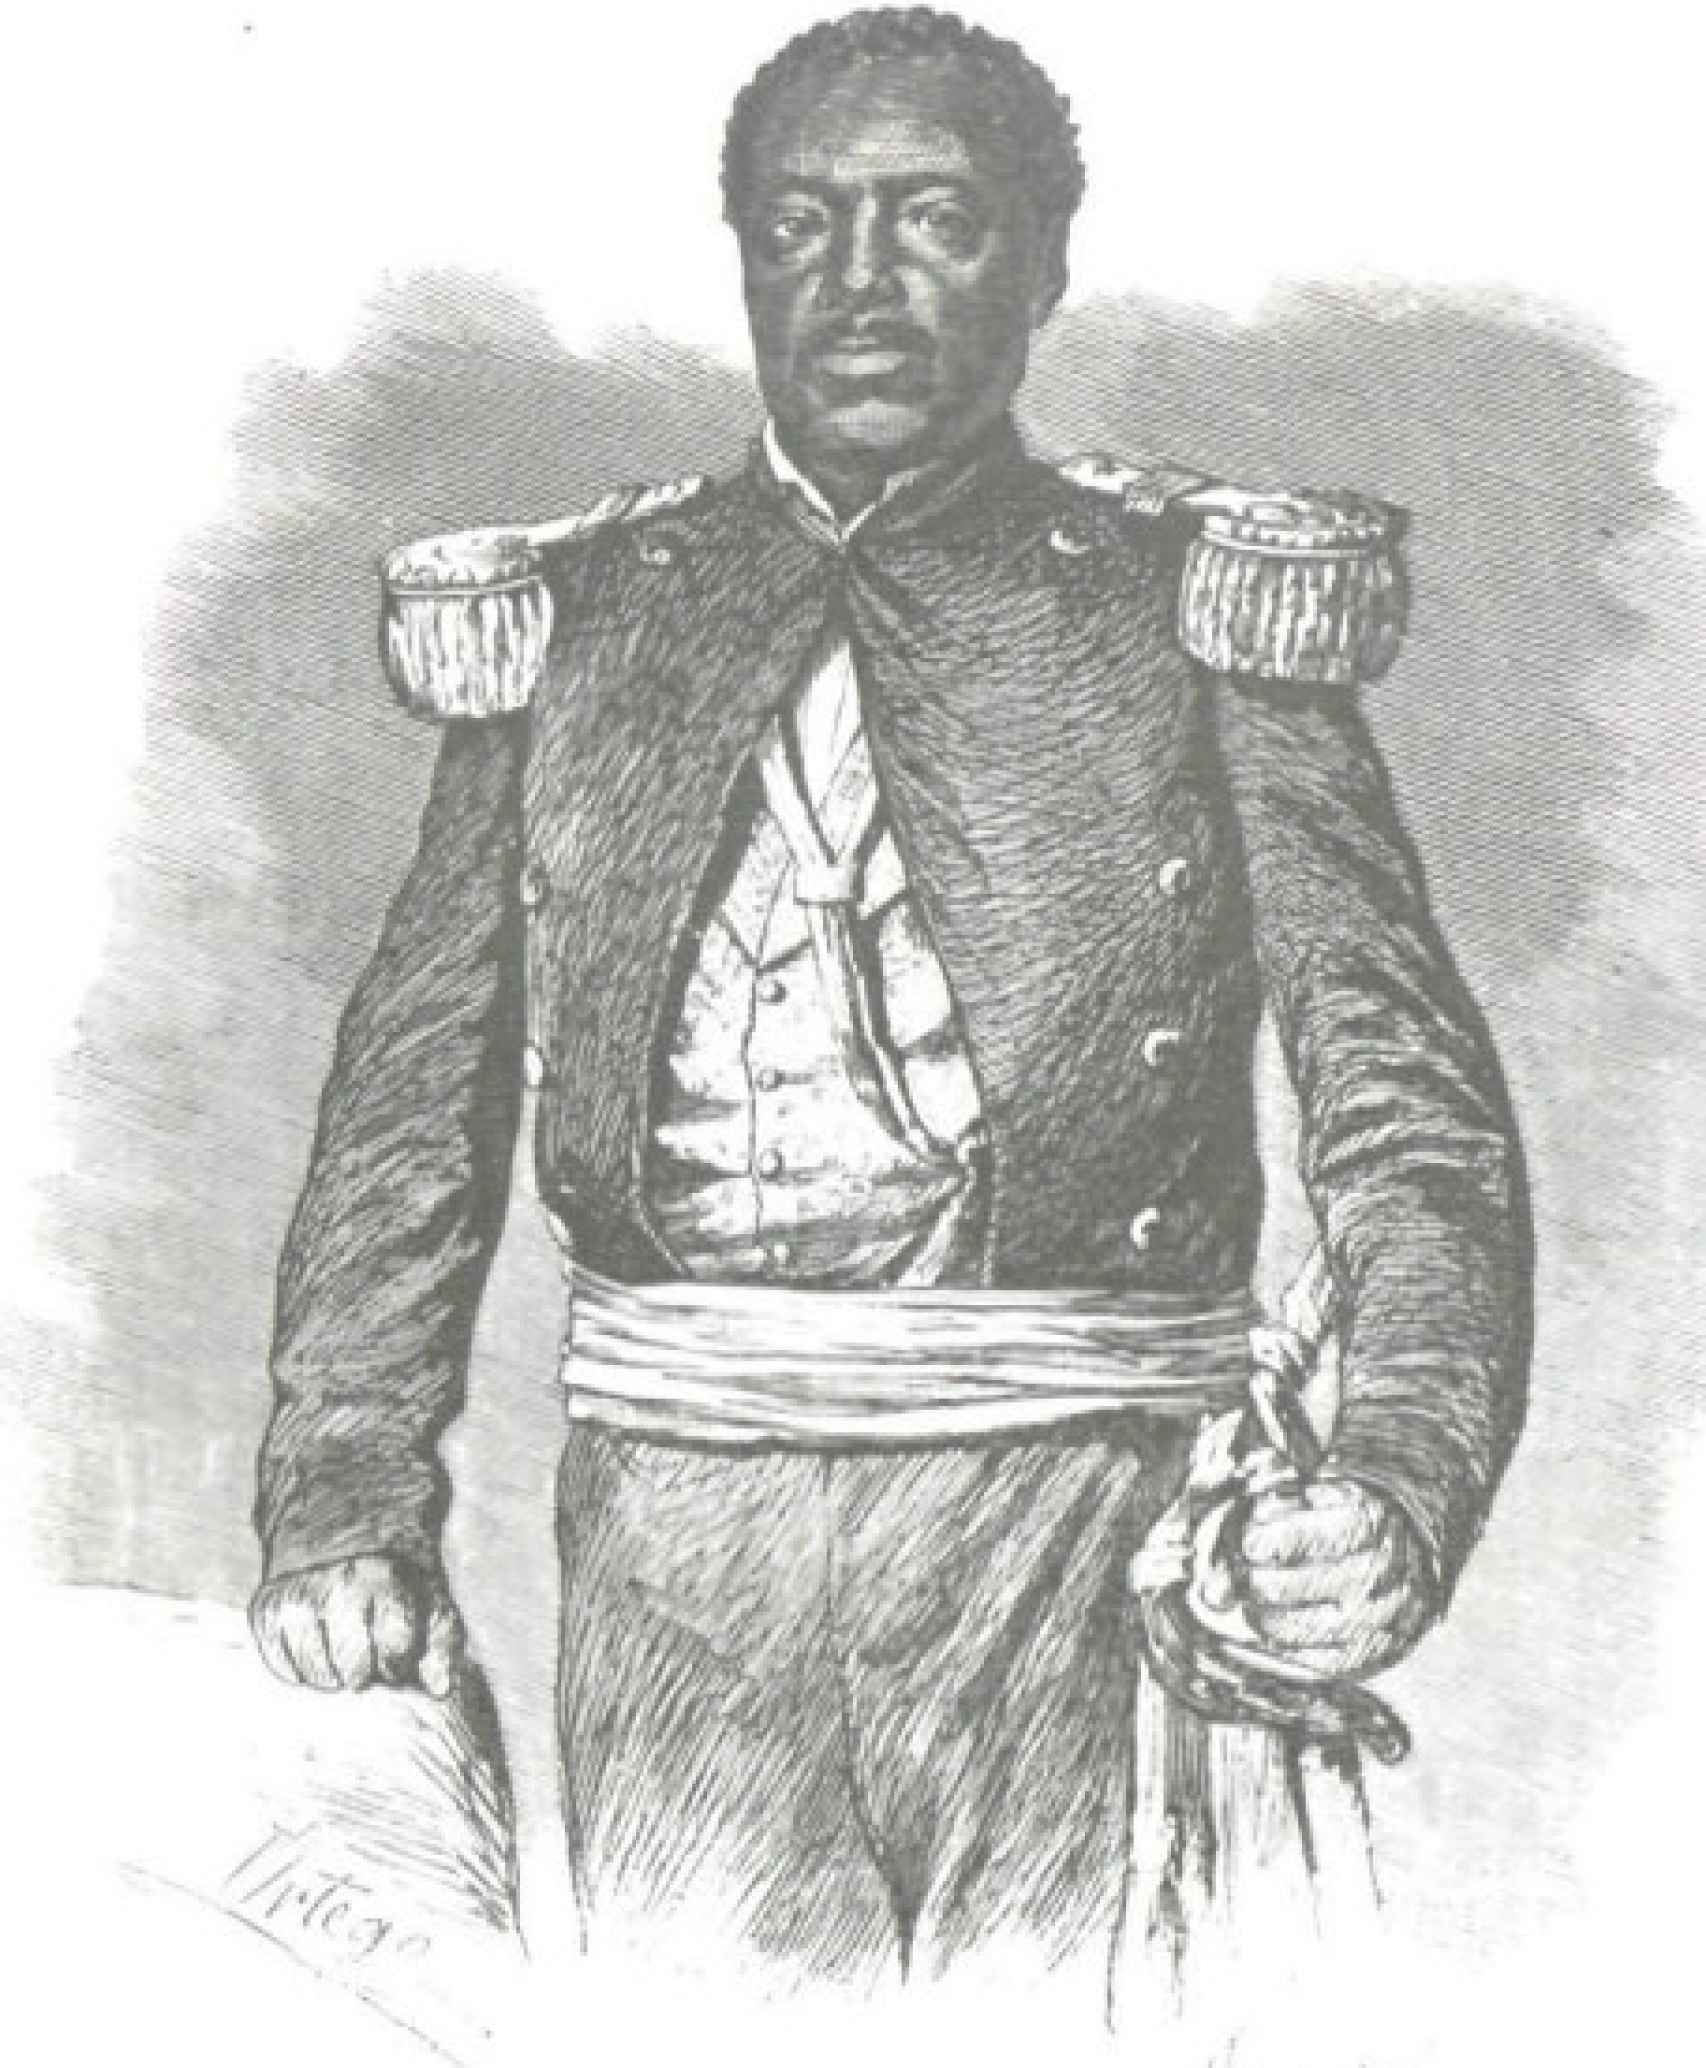 Ilustración de 1862 de Don Juan Suero, apodado el Cid Negro.